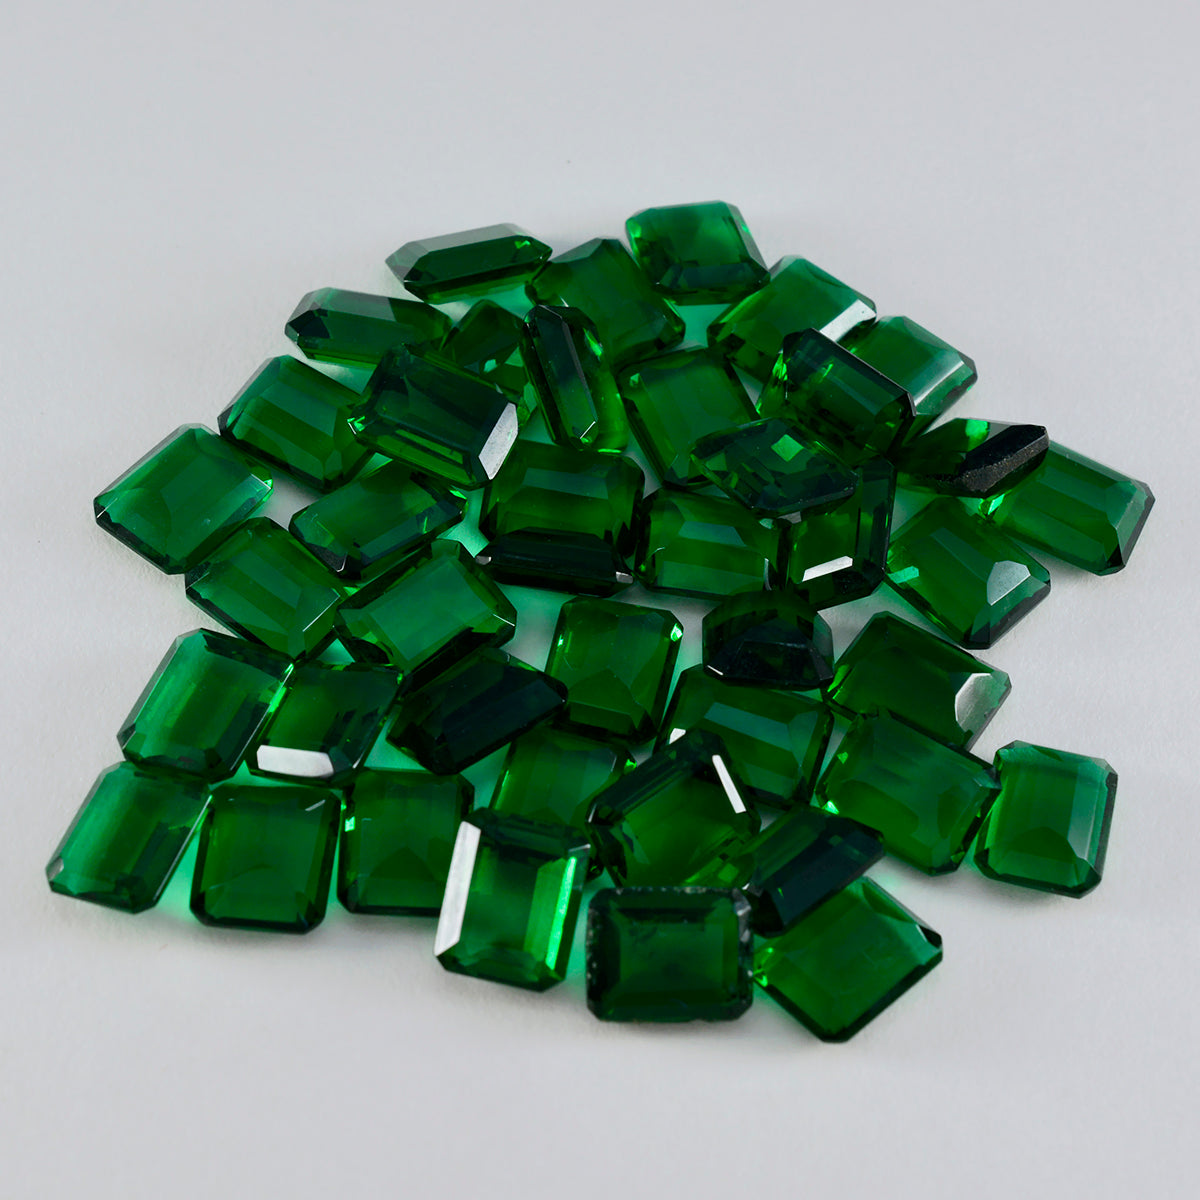 riyogems 1 шт., зеленый изумруд, граненый 6x8 мм, восьмиугольная форма, хорошее качество, свободный драгоценный камень